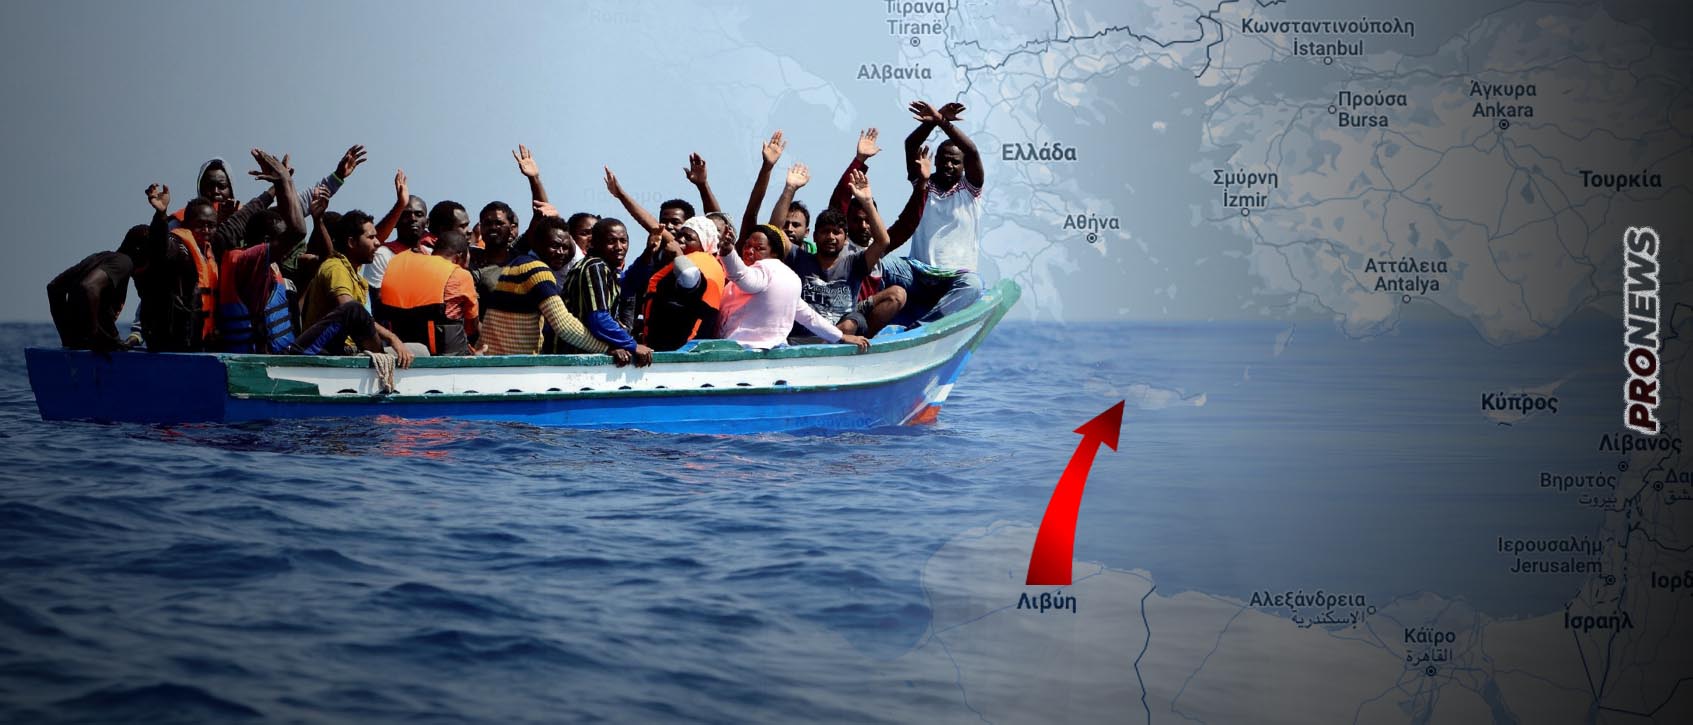 Οι Τούρκοι στέλνουν «καραβιές» με παράνομους αλλοδαπούς στην Κρήτη από την Λιβύη: «Το νησί μετατρέπεται σε “νέο Έβρο”»